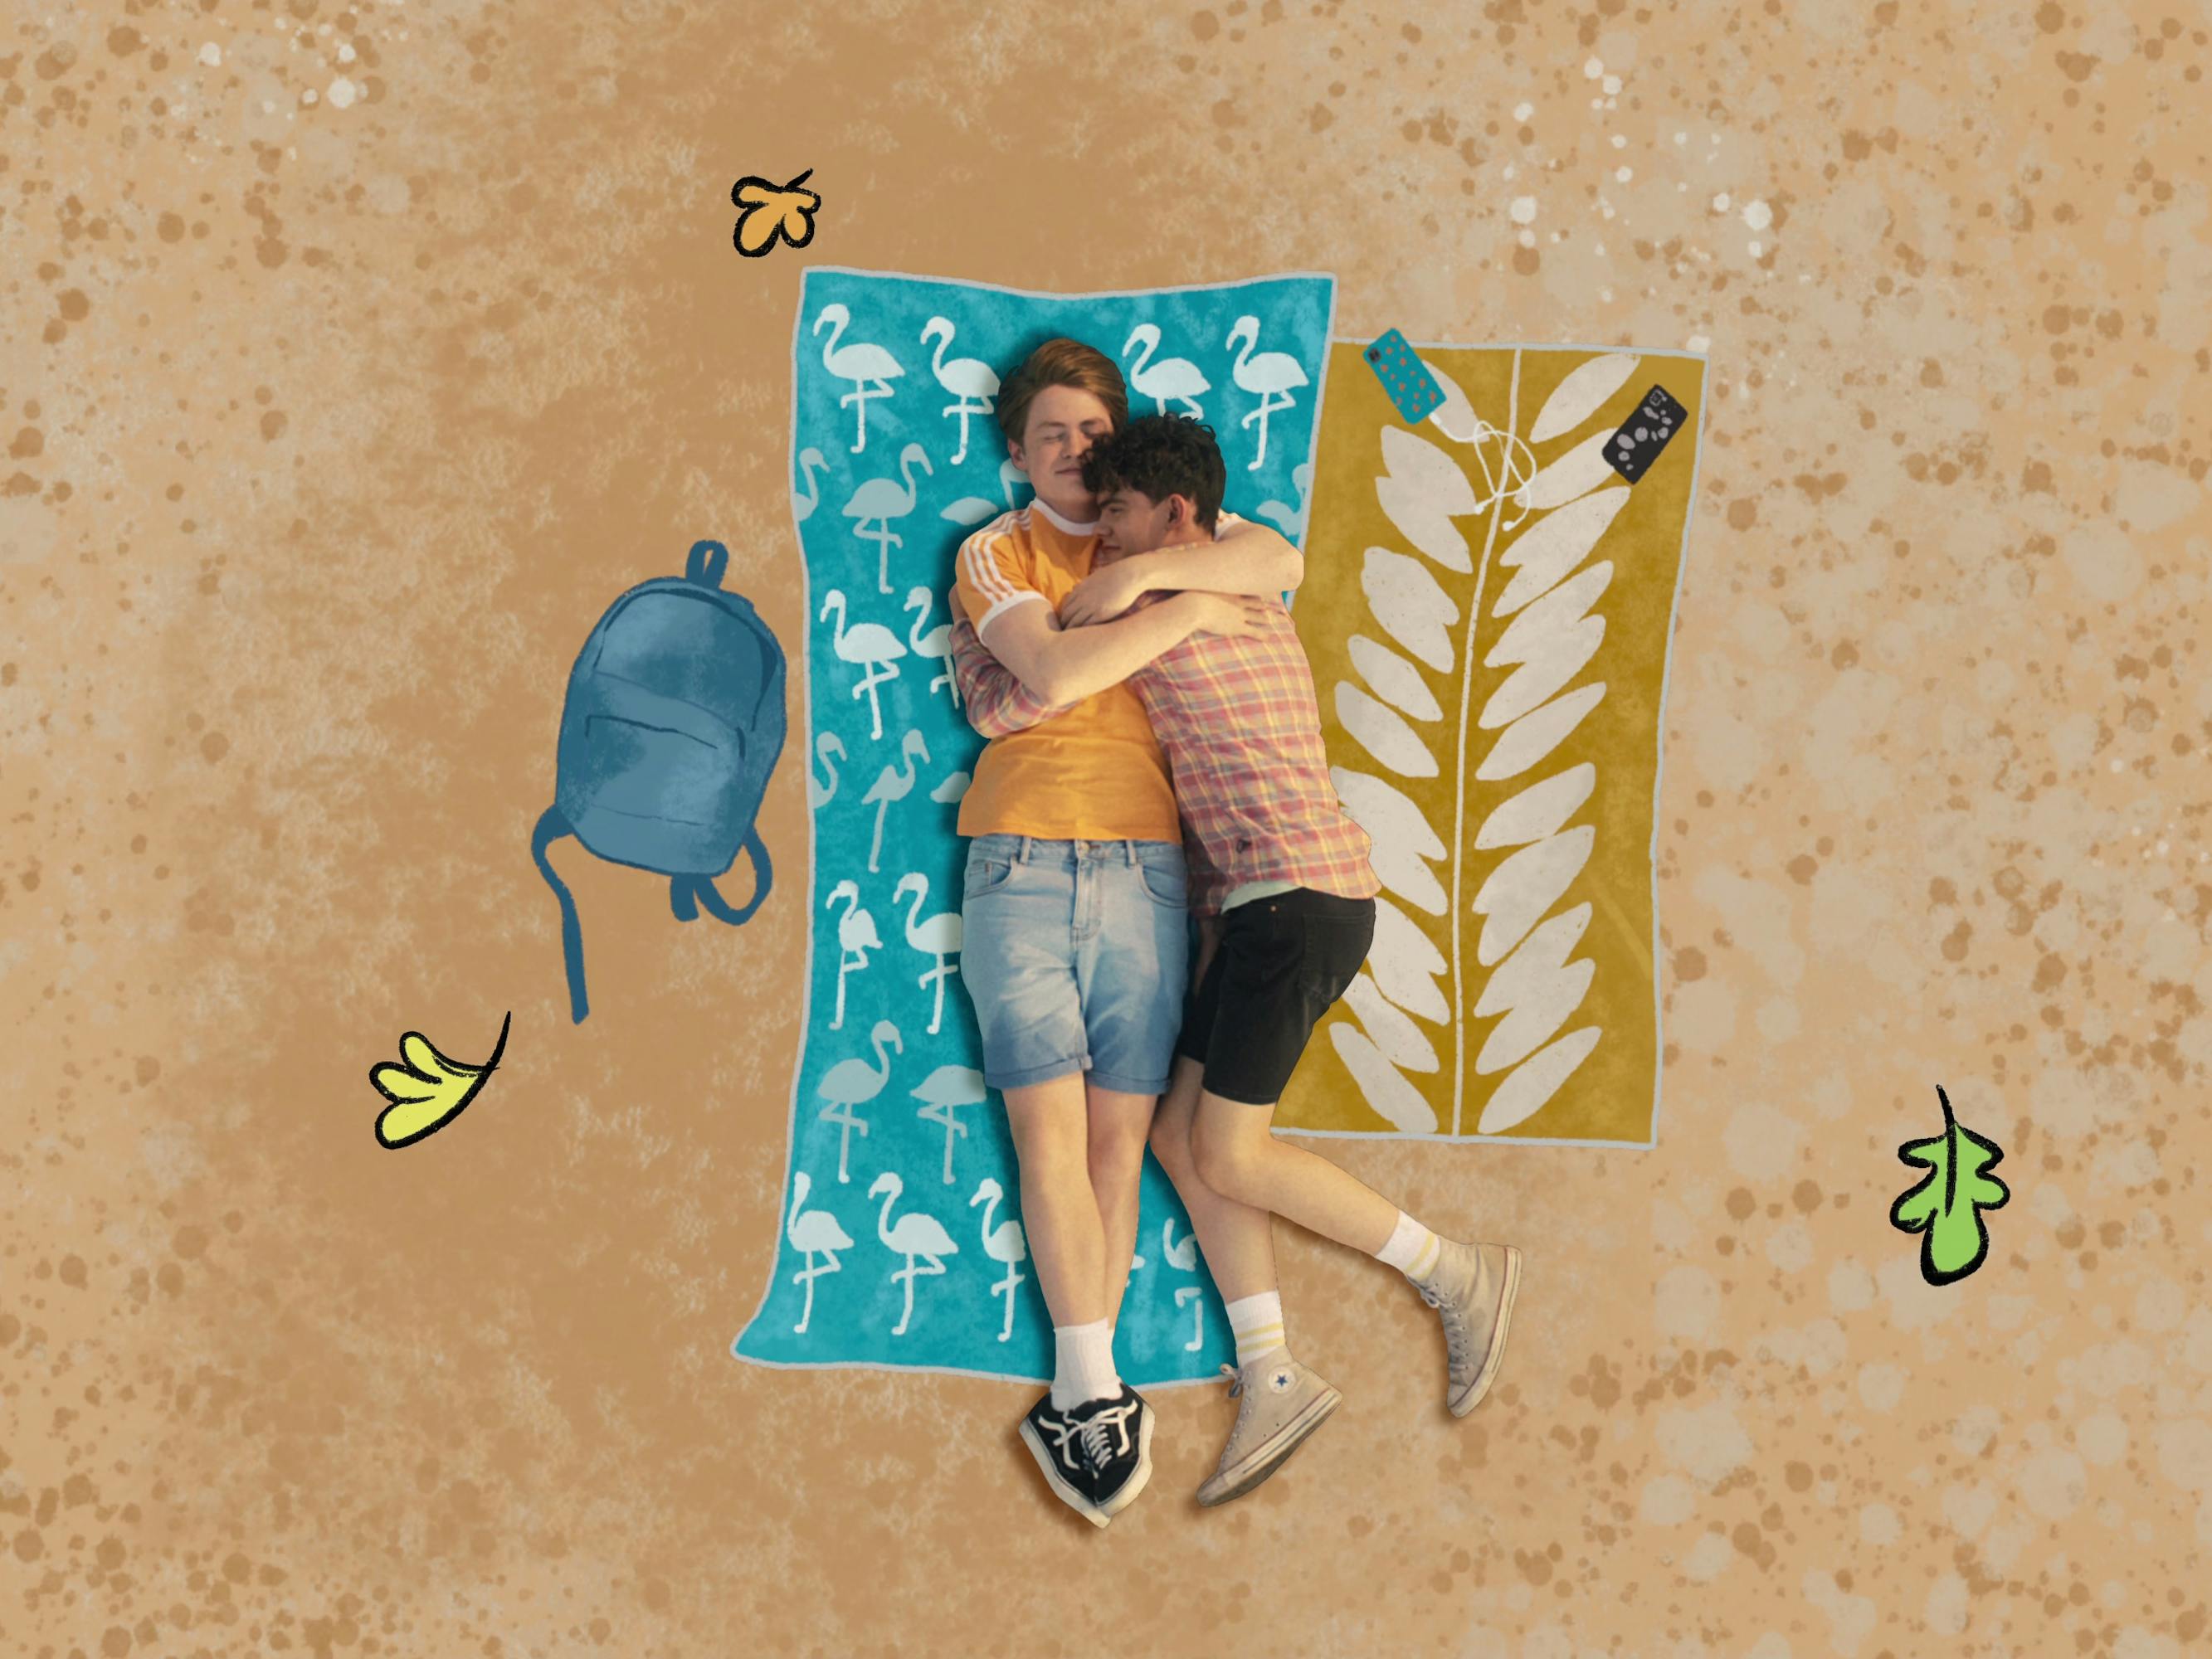 Charlie Spring (Joe Locke) and Nick Nelson (Kit Connor) lie on a beach towel on a sandy beach.